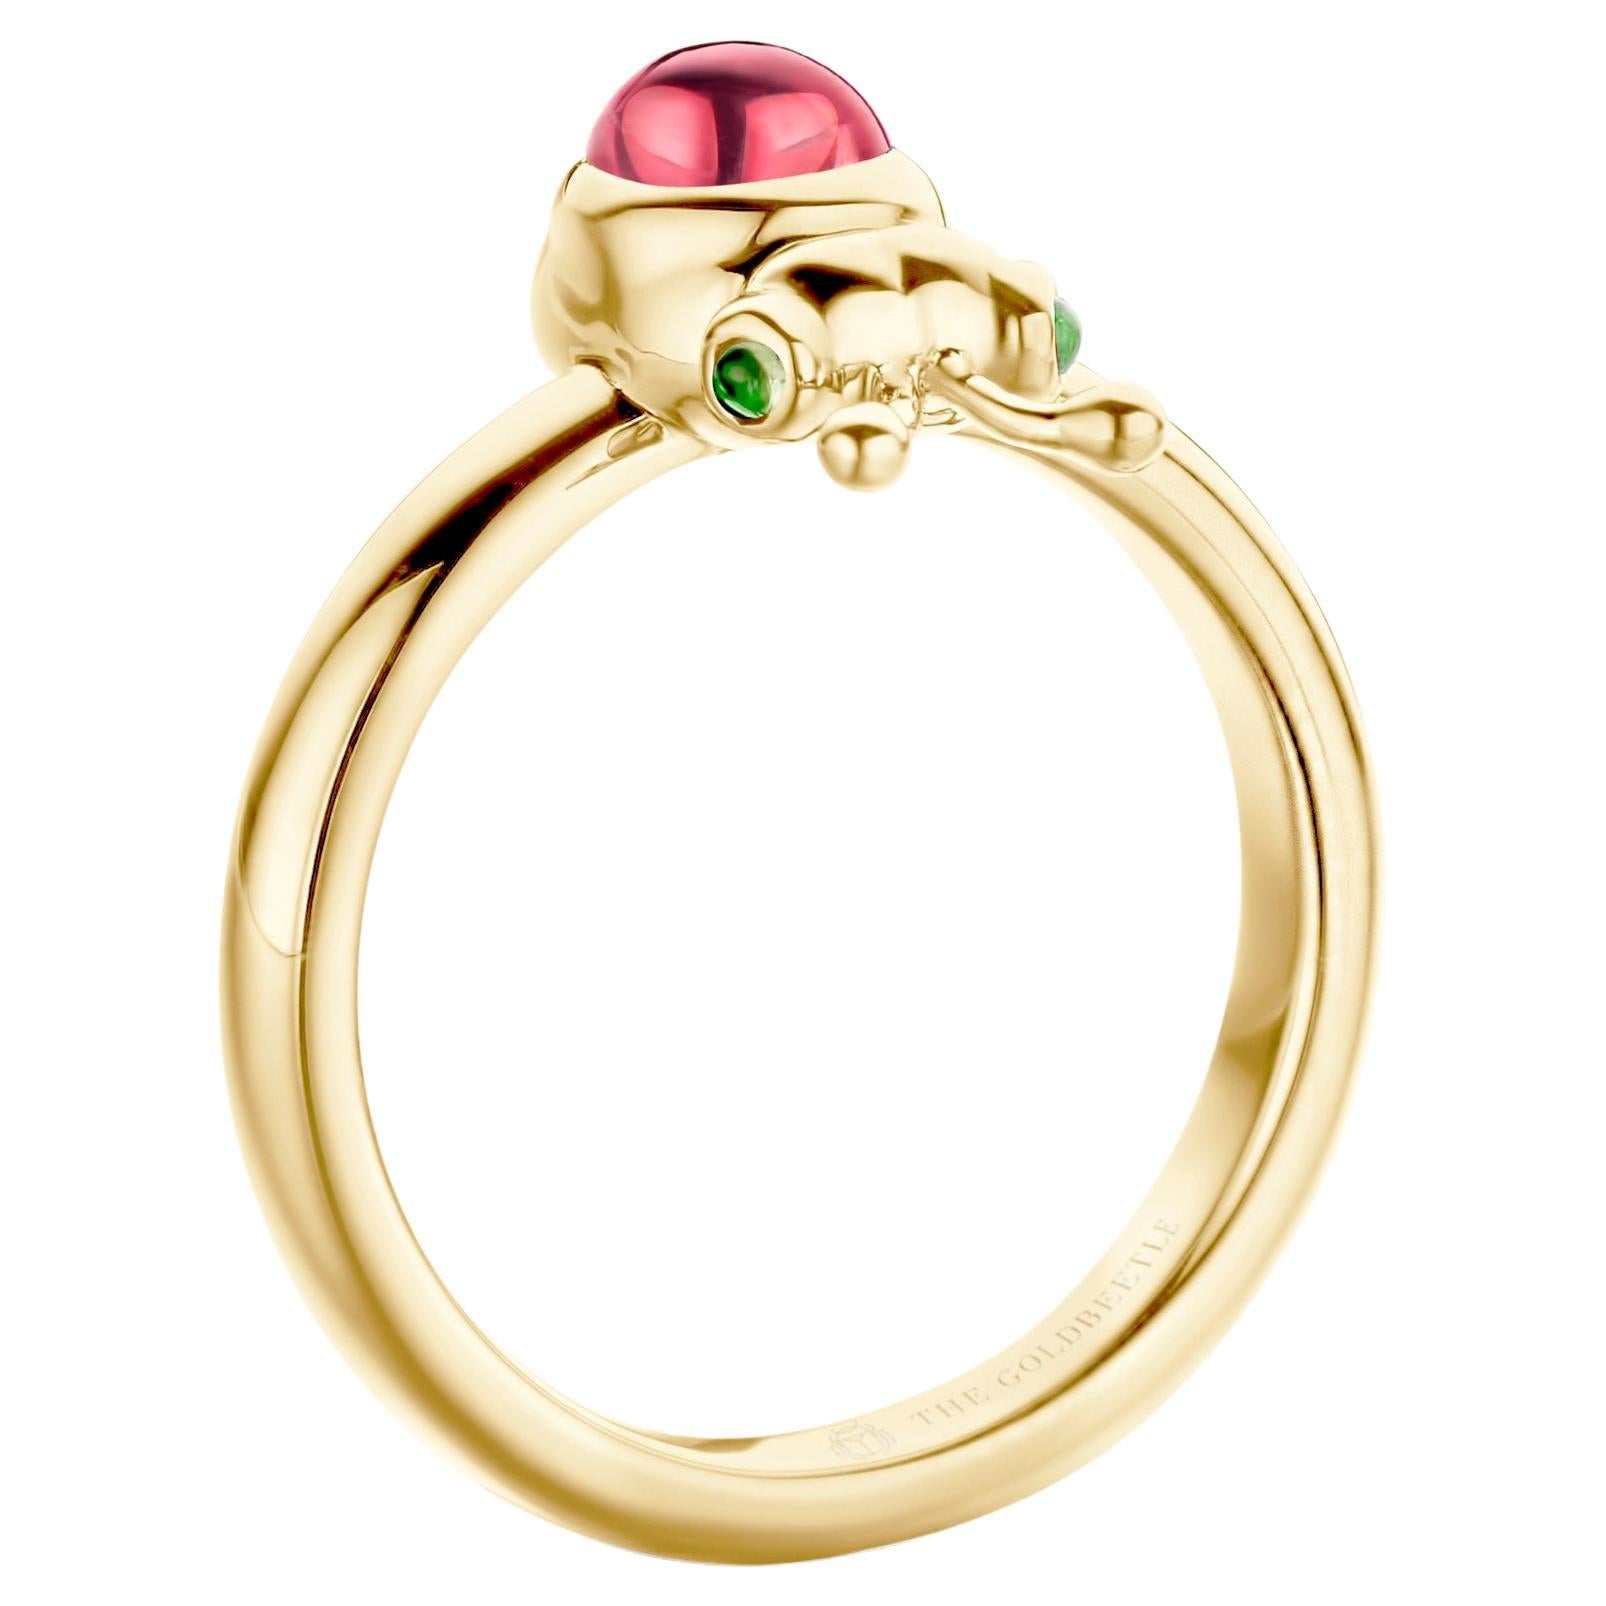 Lilou-Ring aus 18 Karat Gelbgold, besetzt mit einem natürlichen birnenförmigen Cabochon aus rosa Turmalin und zwei natürlichen Tsavoriten im runden Cabochon-Schliff.
Celine Roelens, Goldschmiedin und Gemmologin, hat sich auf einzigartigen, feinen